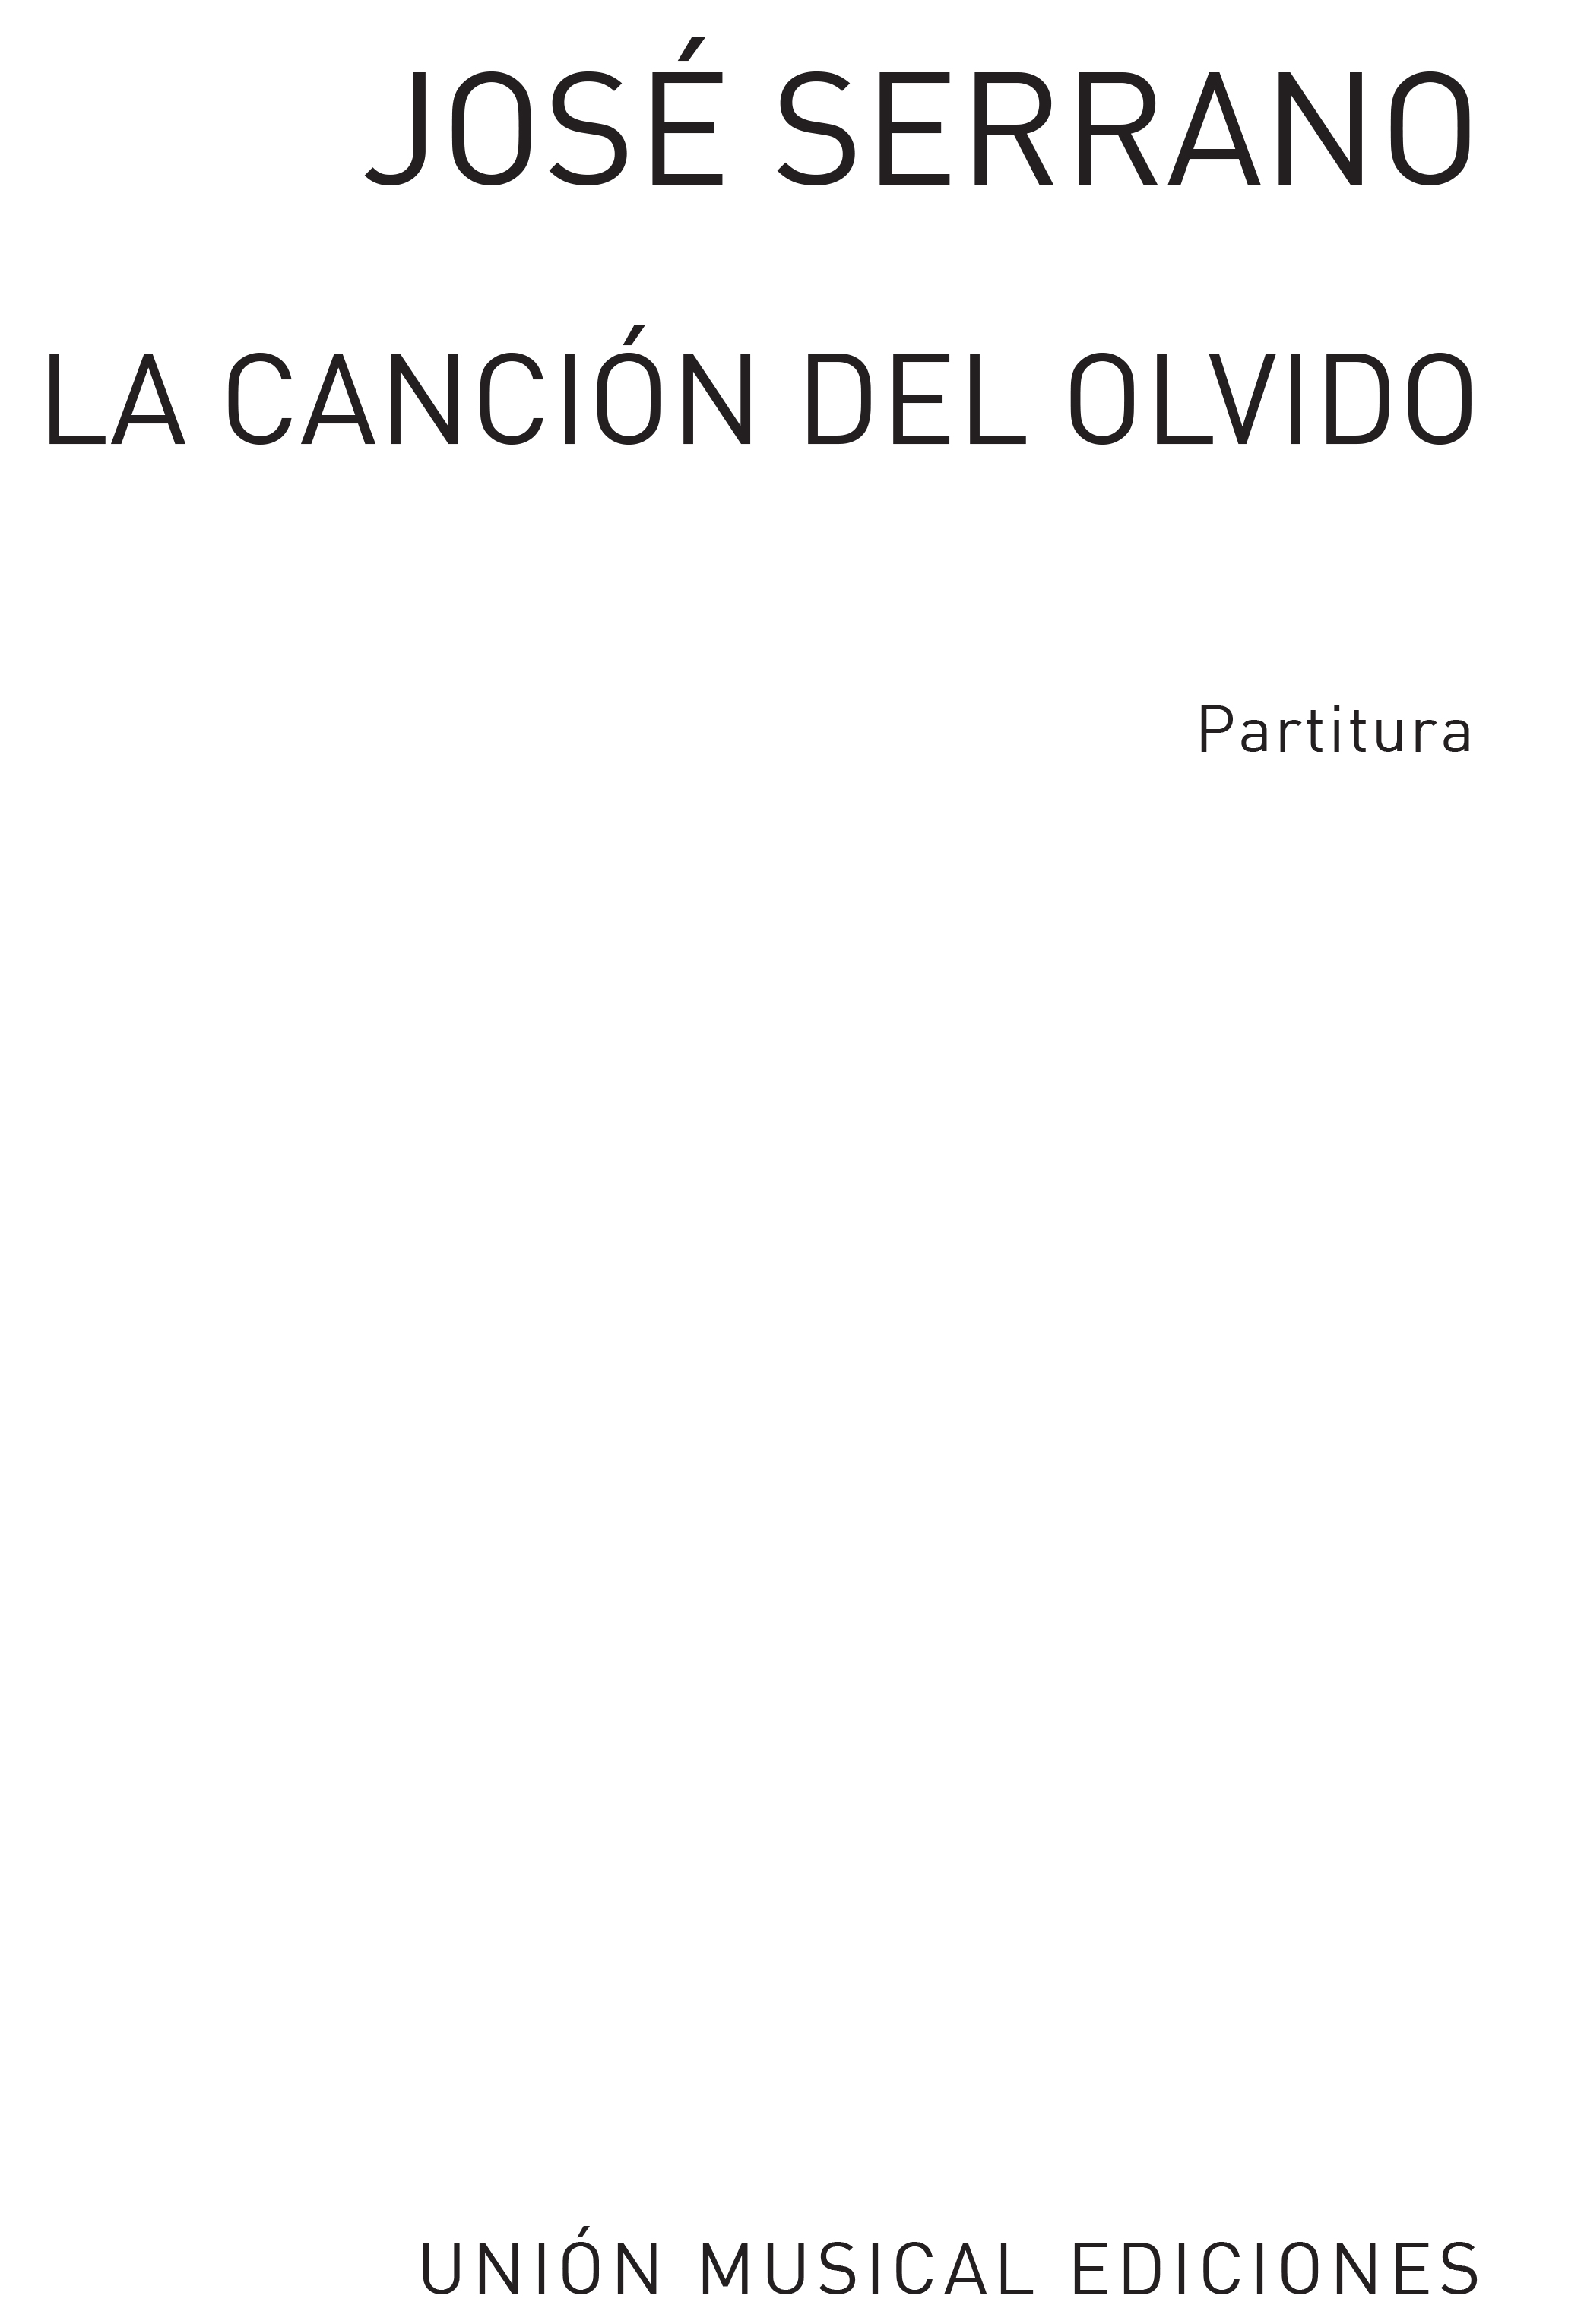 Jose Serrano: La Cancion Del Olvido Partitura: Opera: Vocal Score